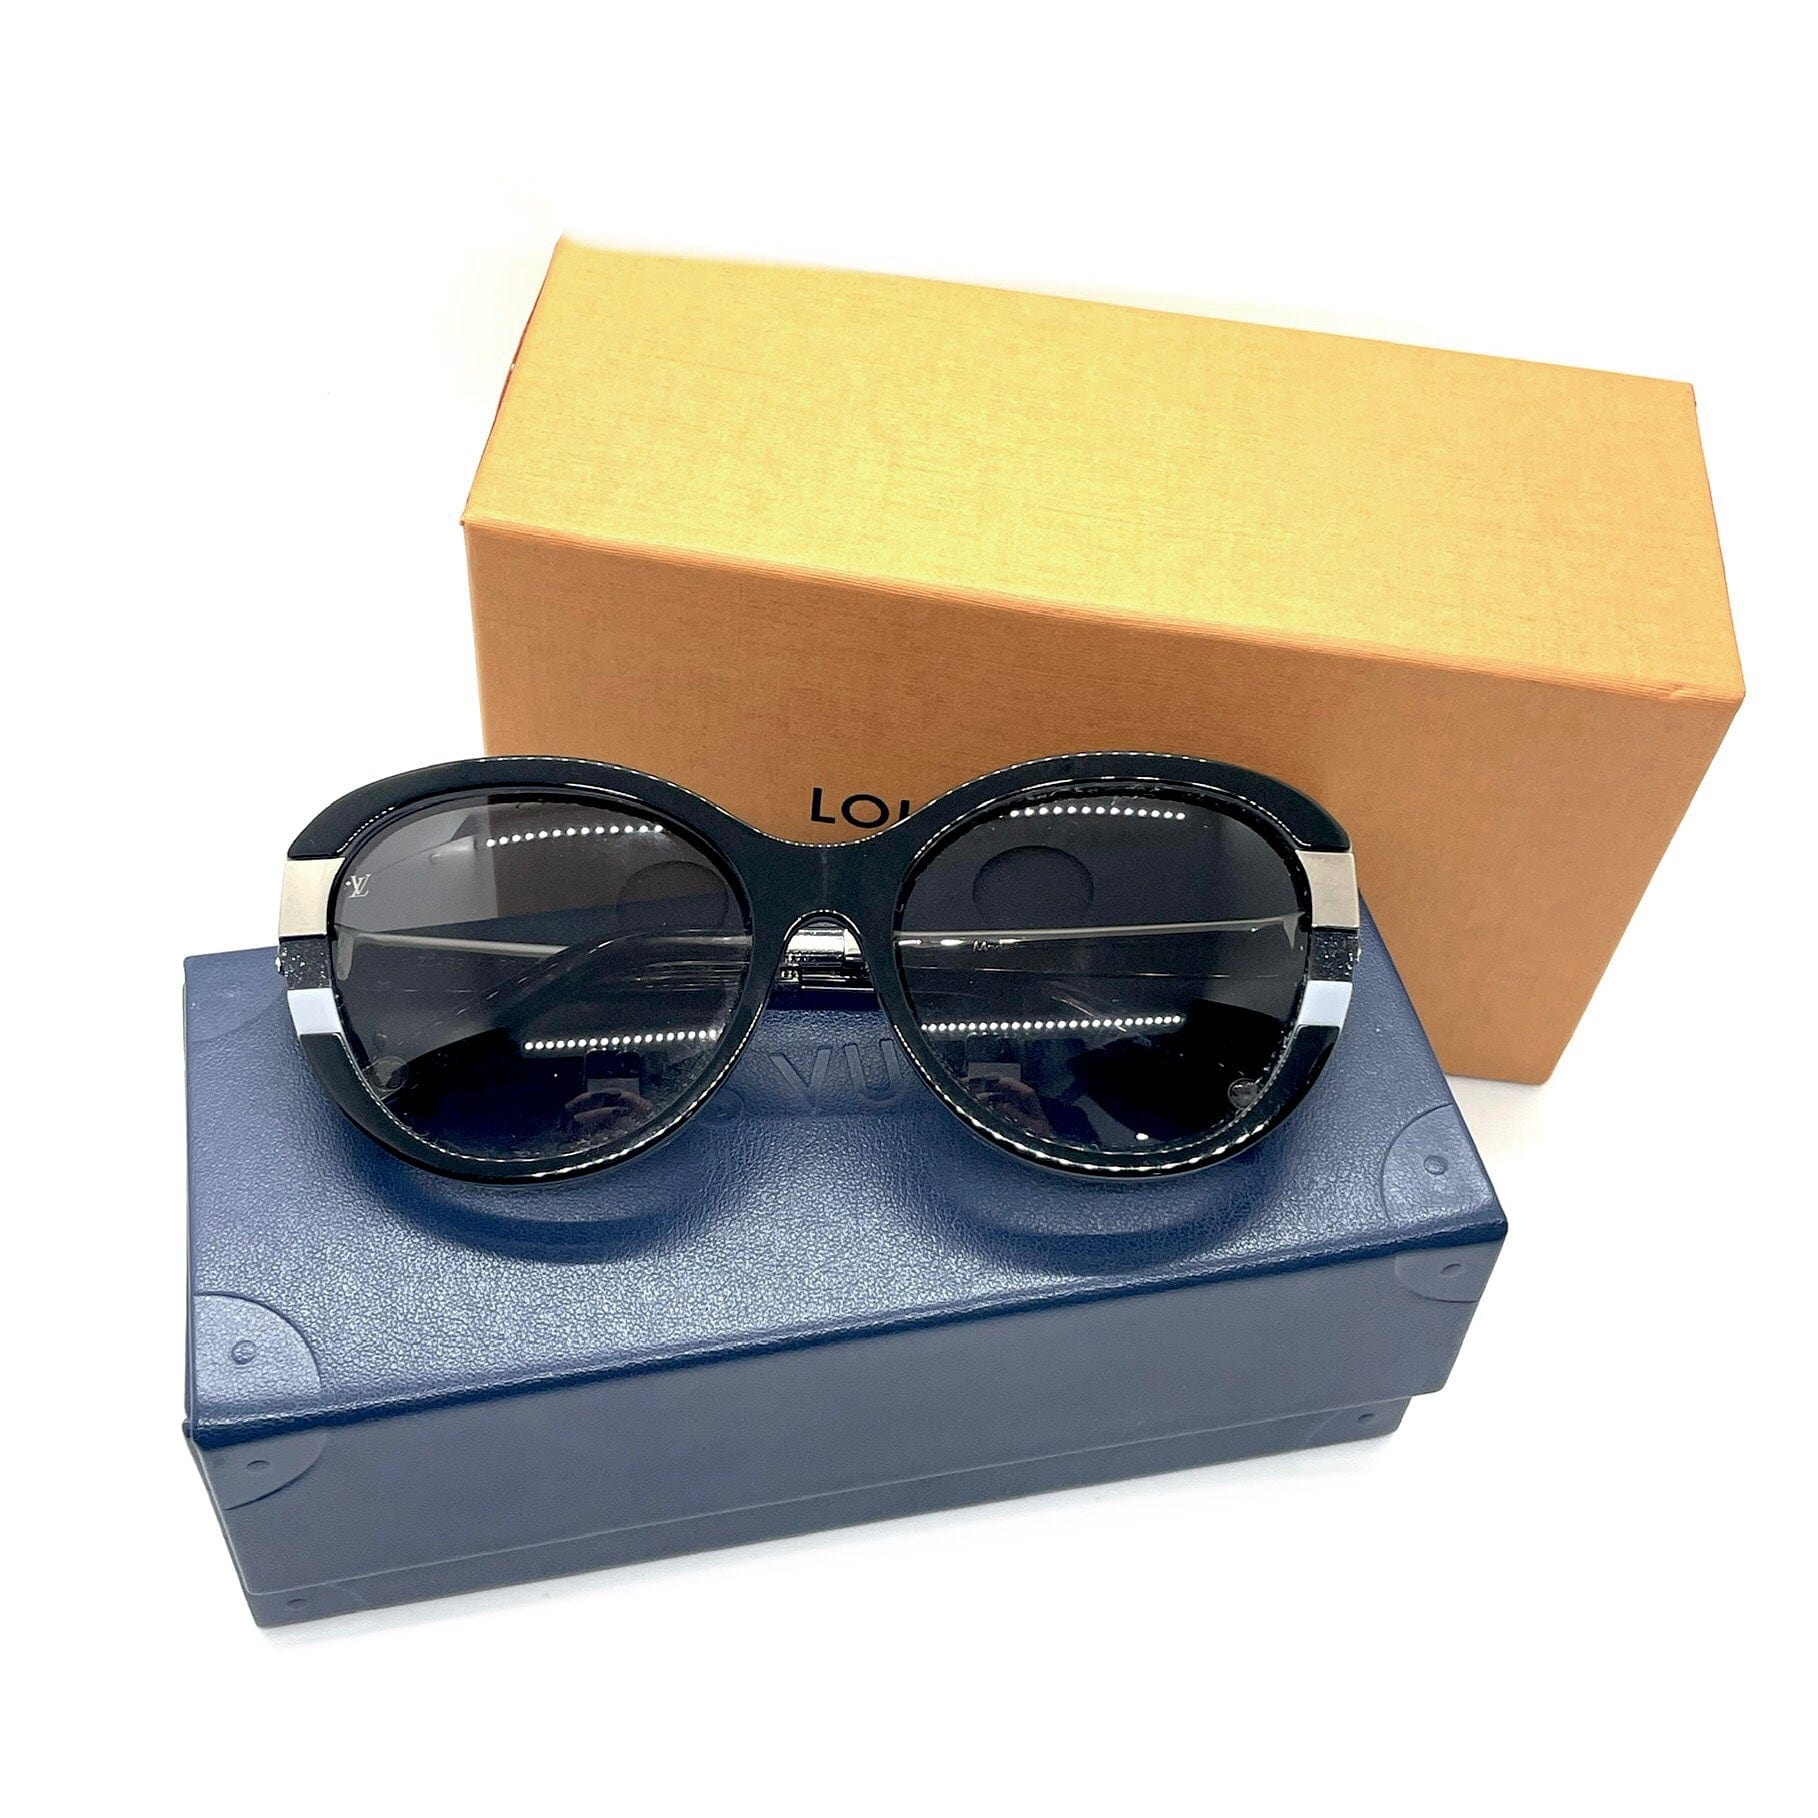 Louis Vuitton Petit soupçon Cat-Eye Sunglasses